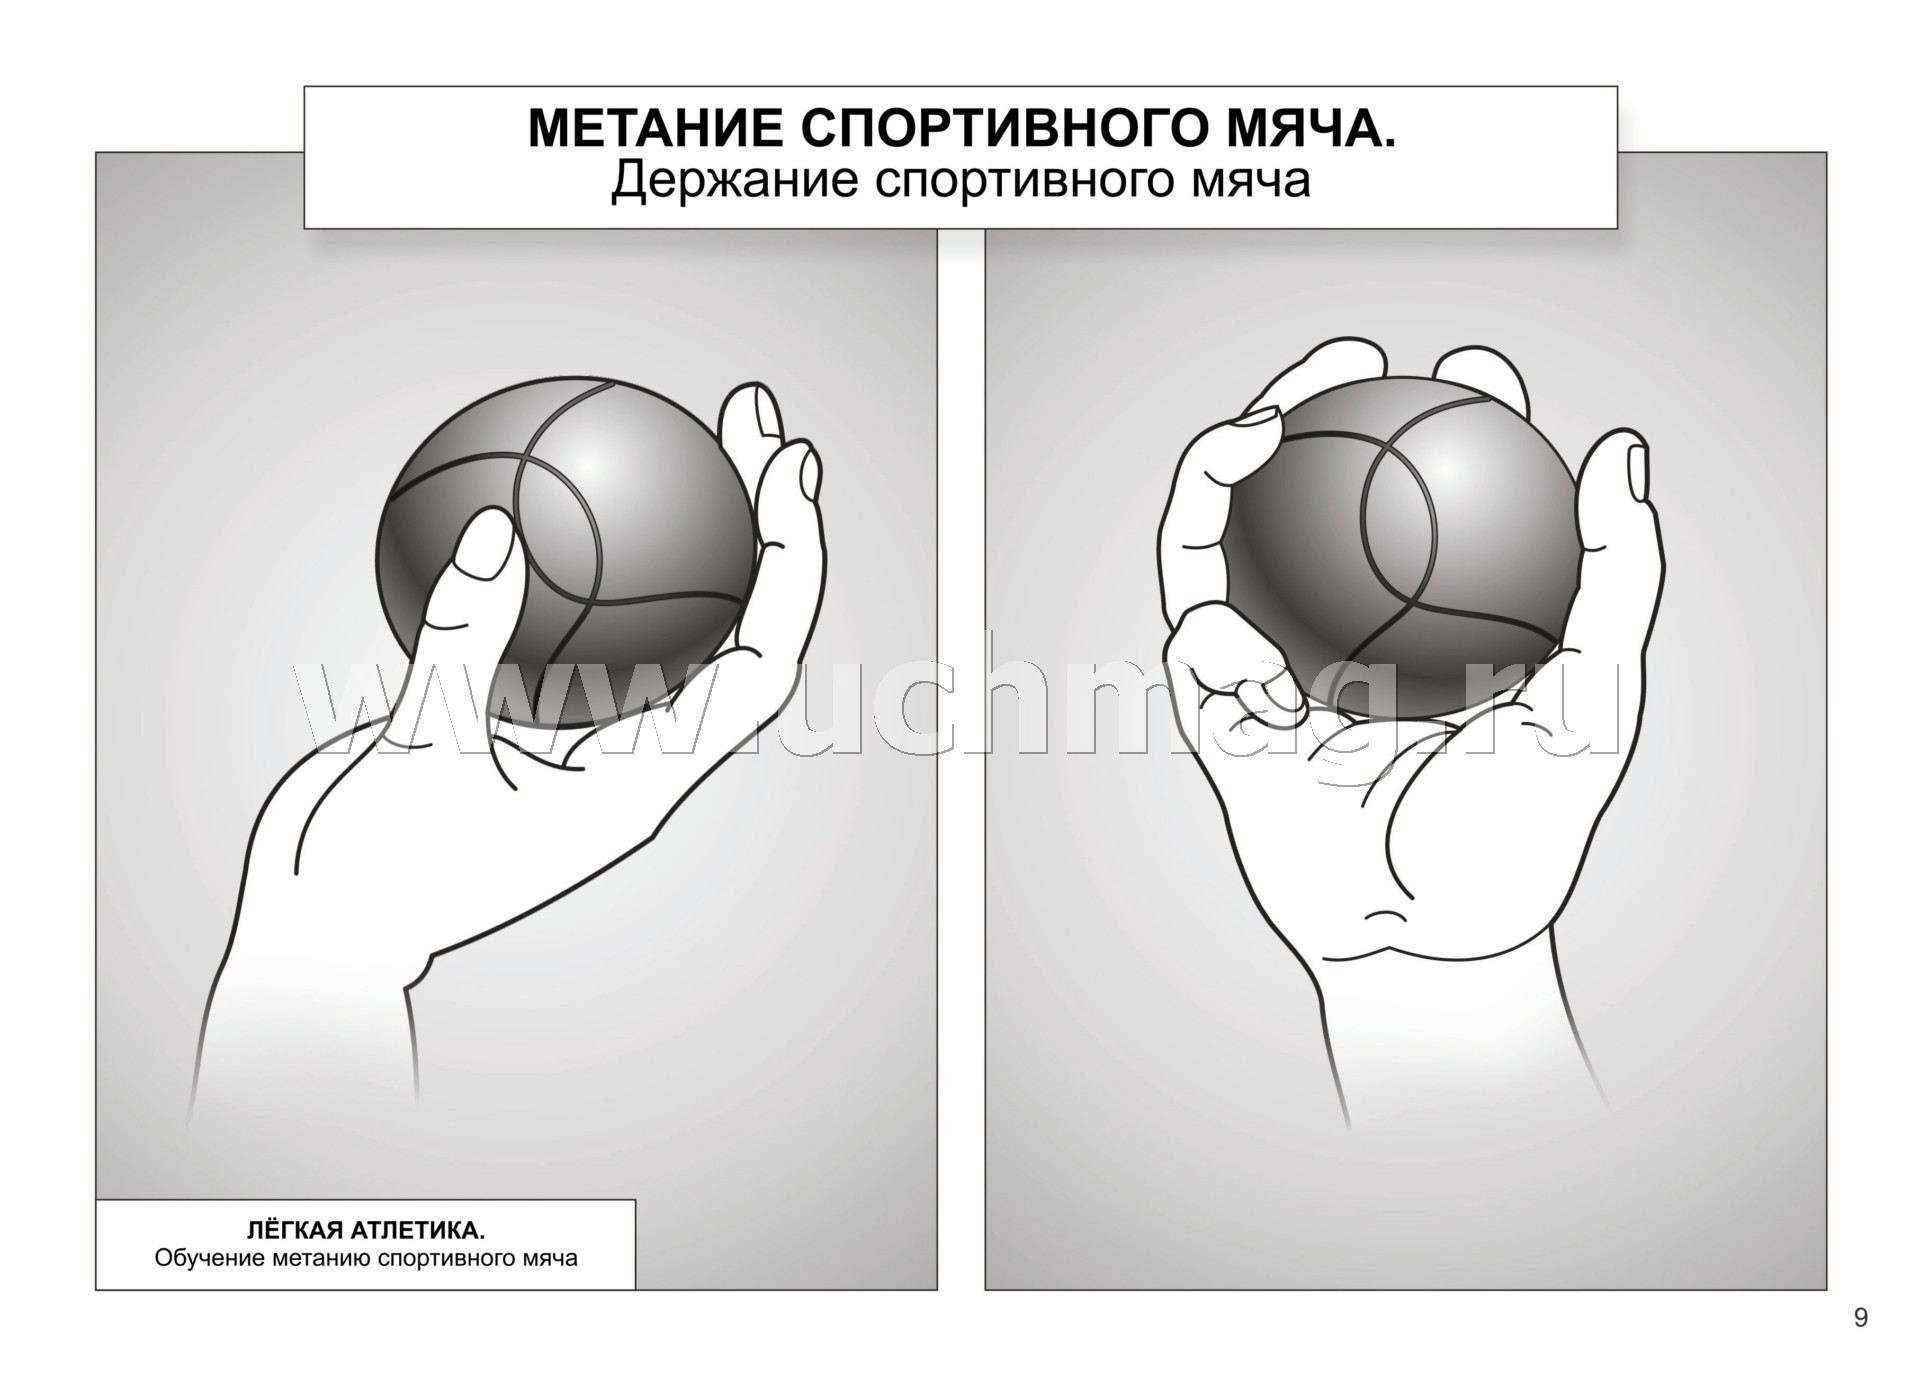 Захват мяча. Держание мяча для метания. Метание мяча в легкой атлетике. Малый мяч для метания. Снаряд для метания в легкой атлетике мяч.